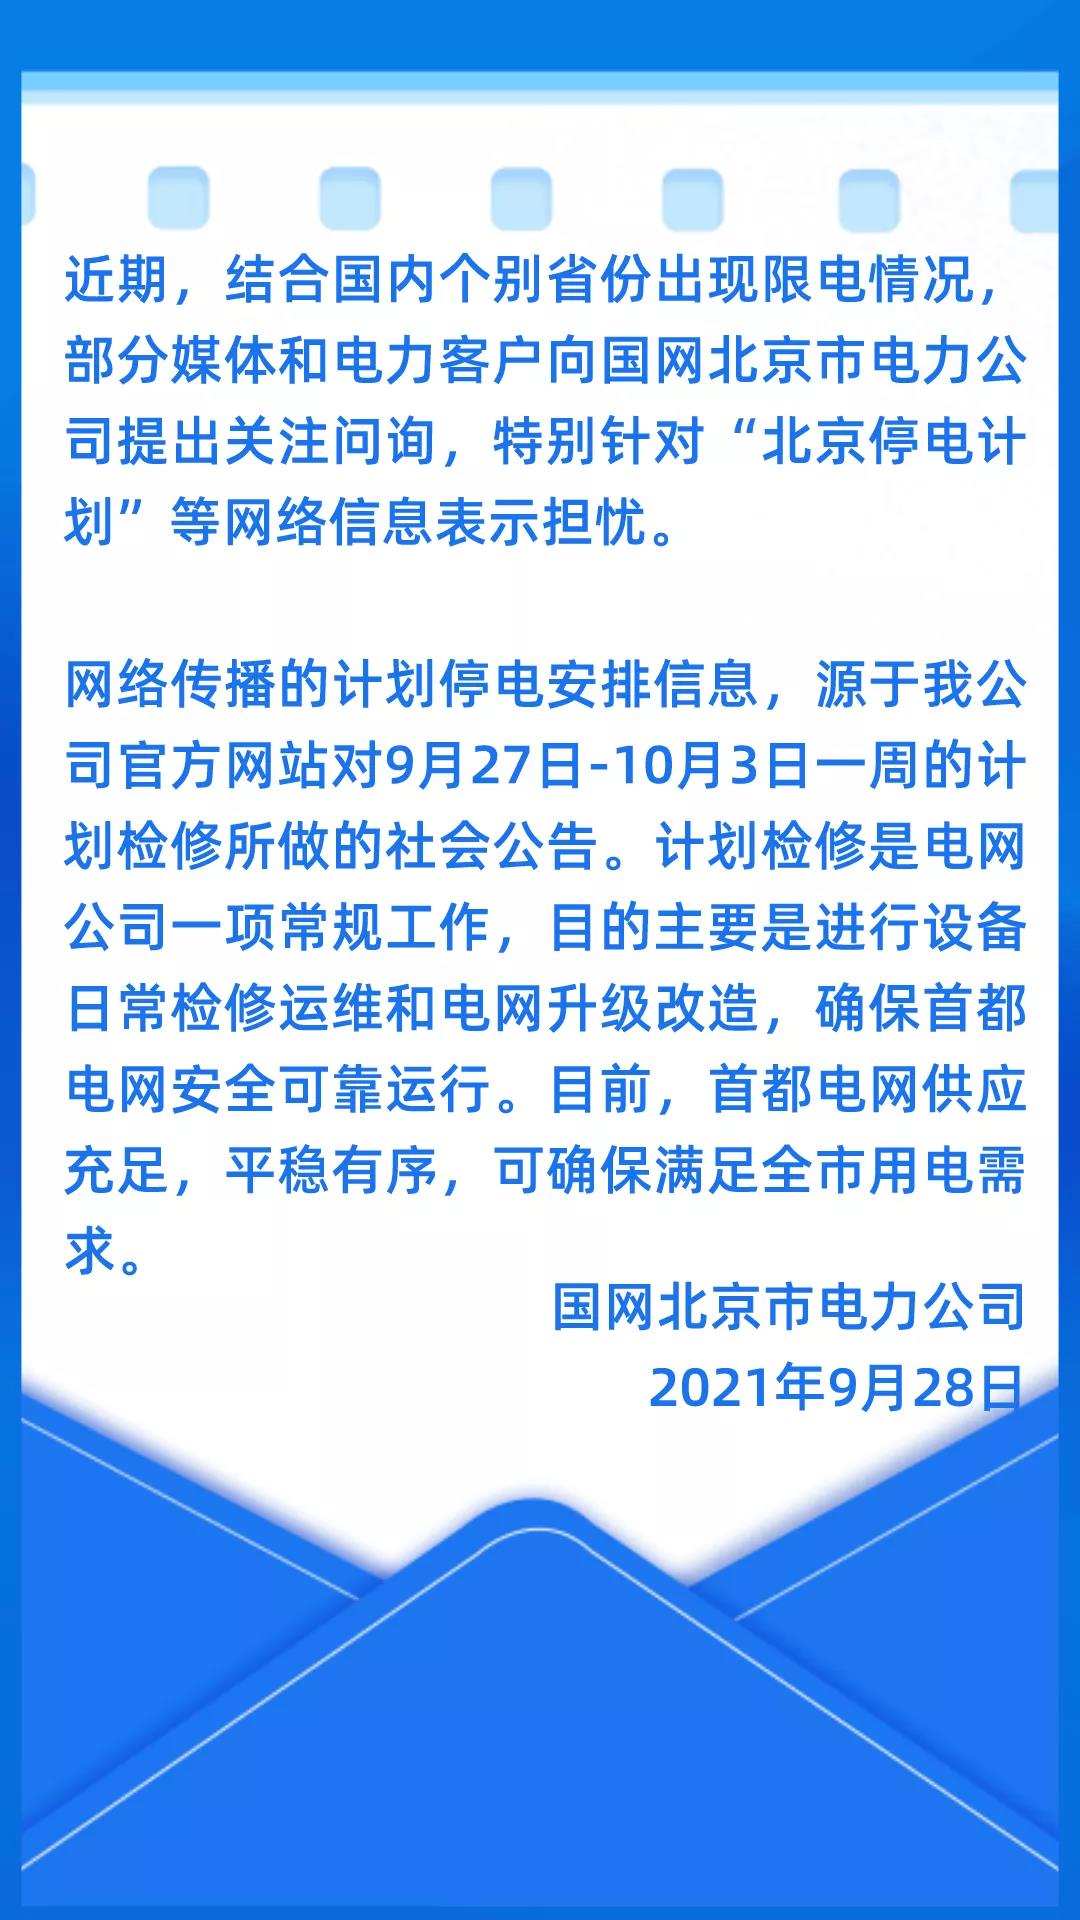 关于网传“北京停电计划”等网络信息的情况说明